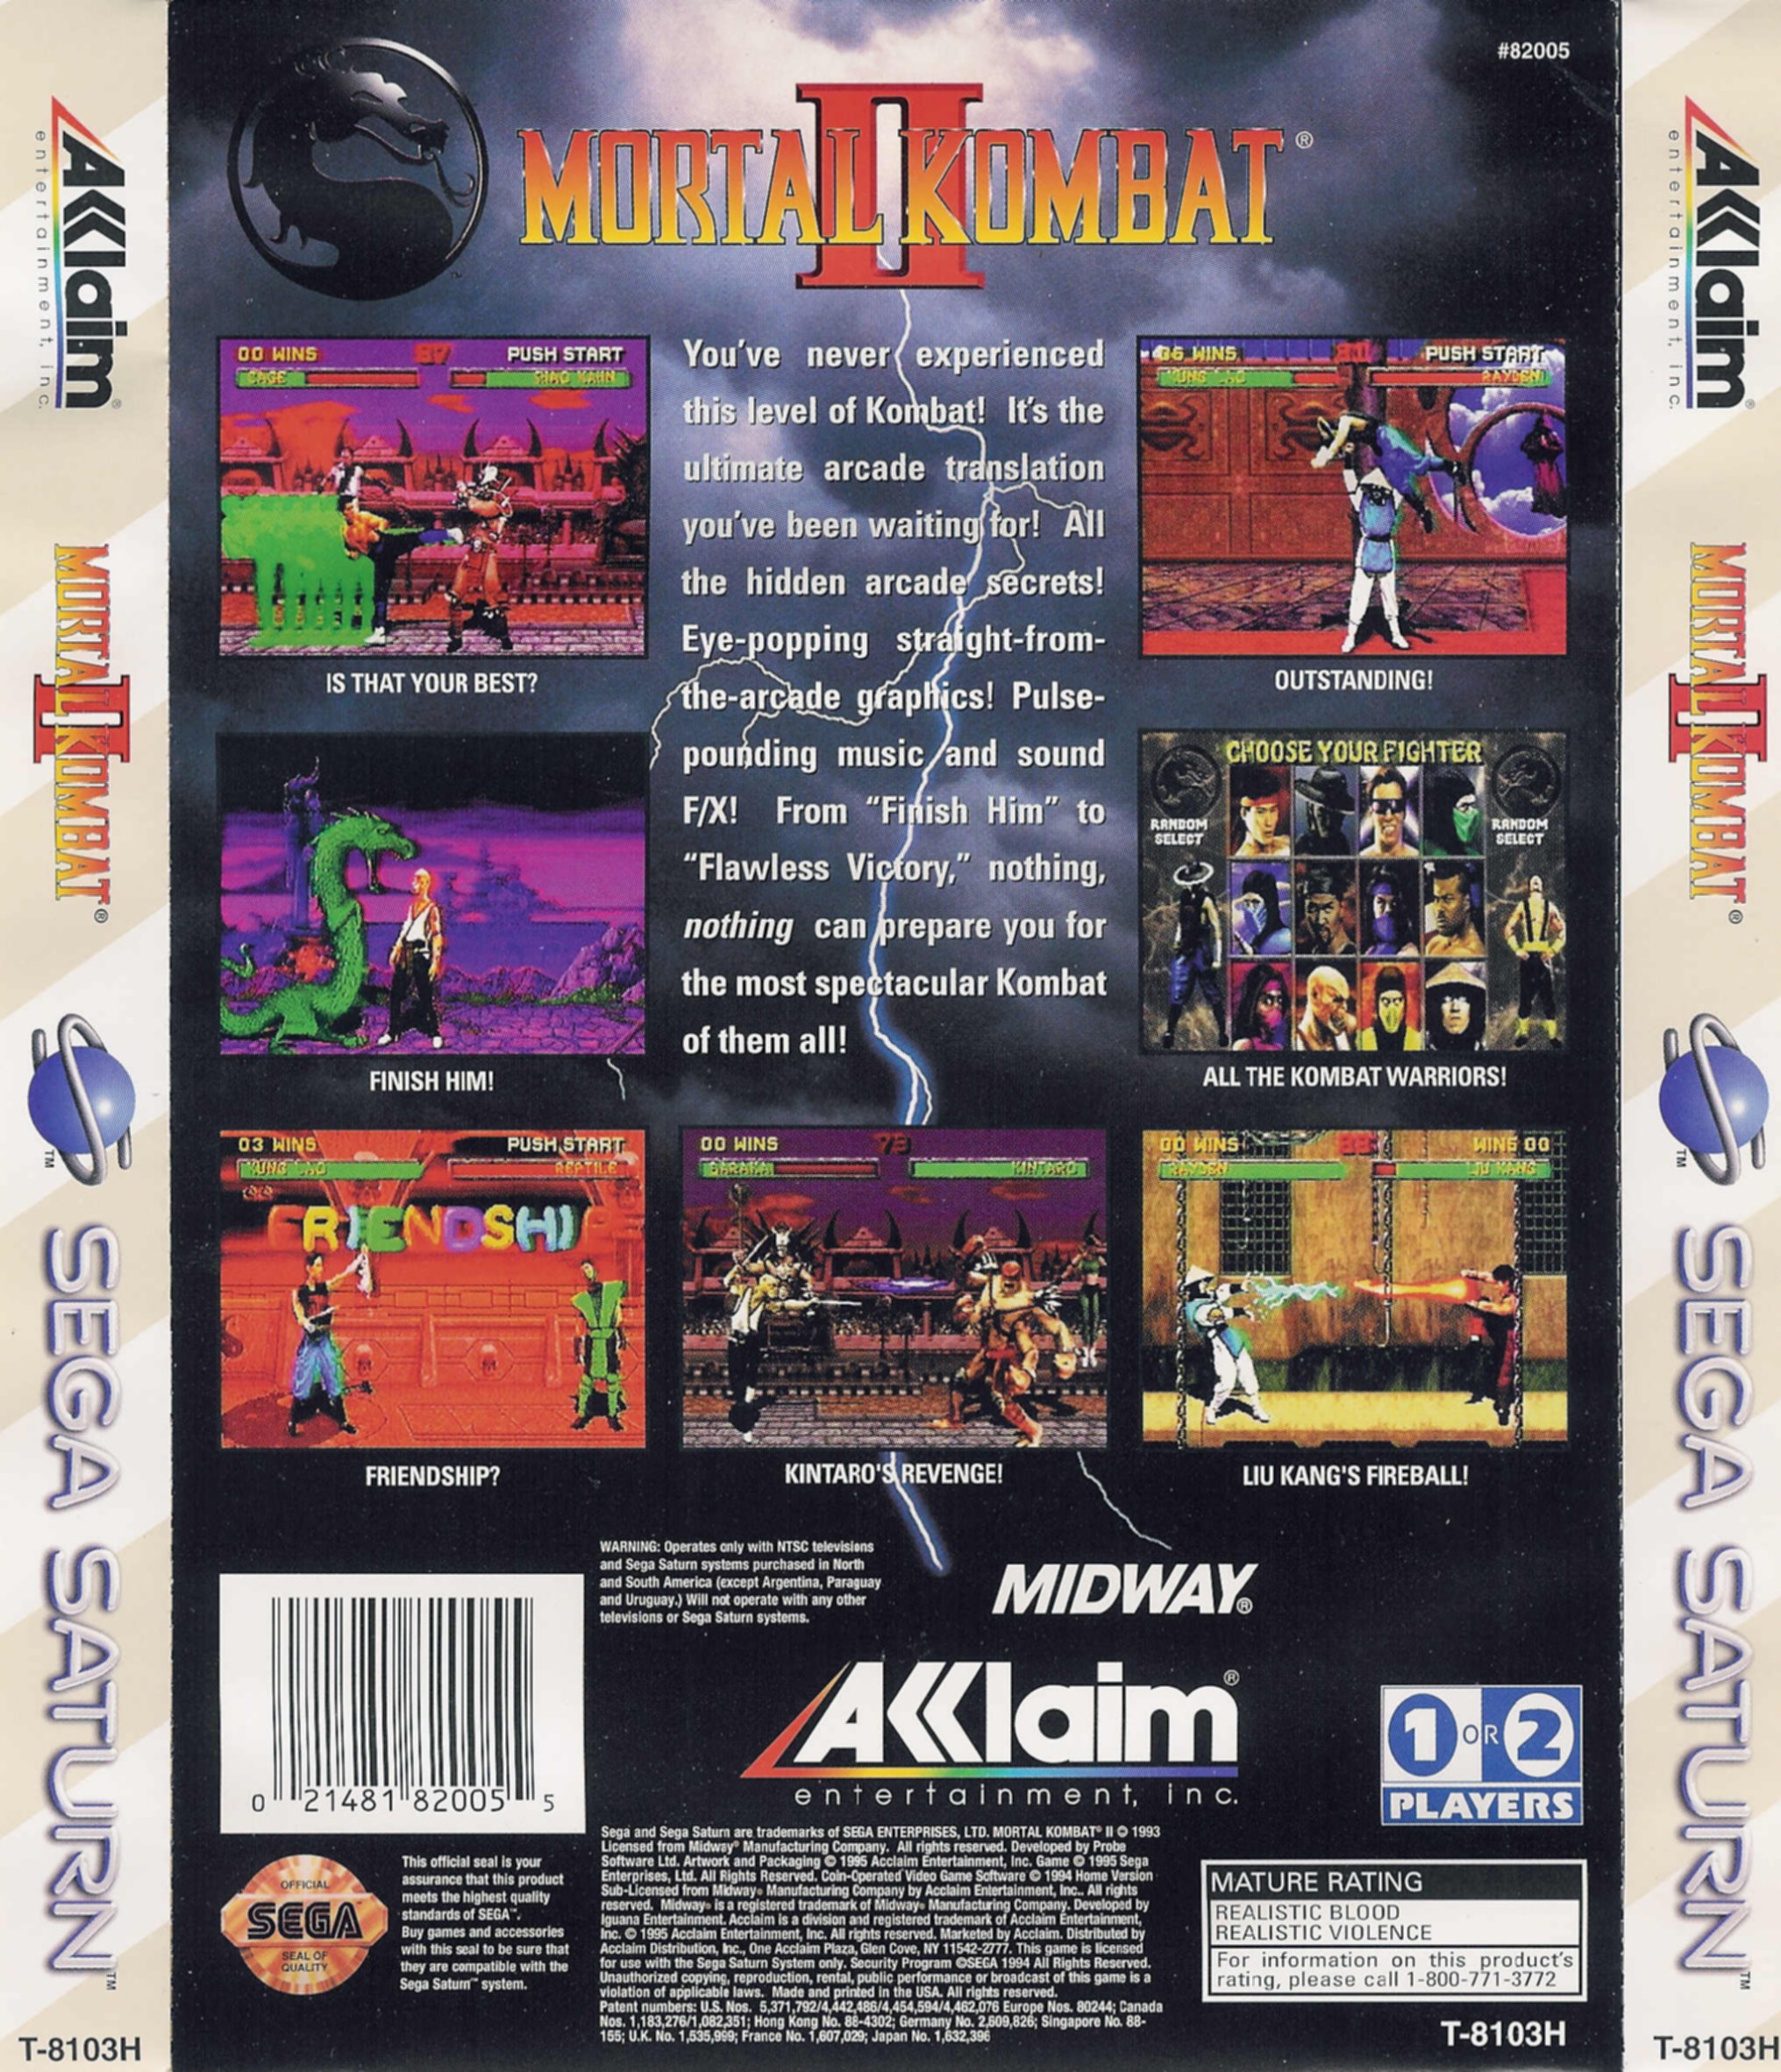 Sega Saturn M Mortal Kombat 2 U Game Covers Box Scans Box Art Cd Labels